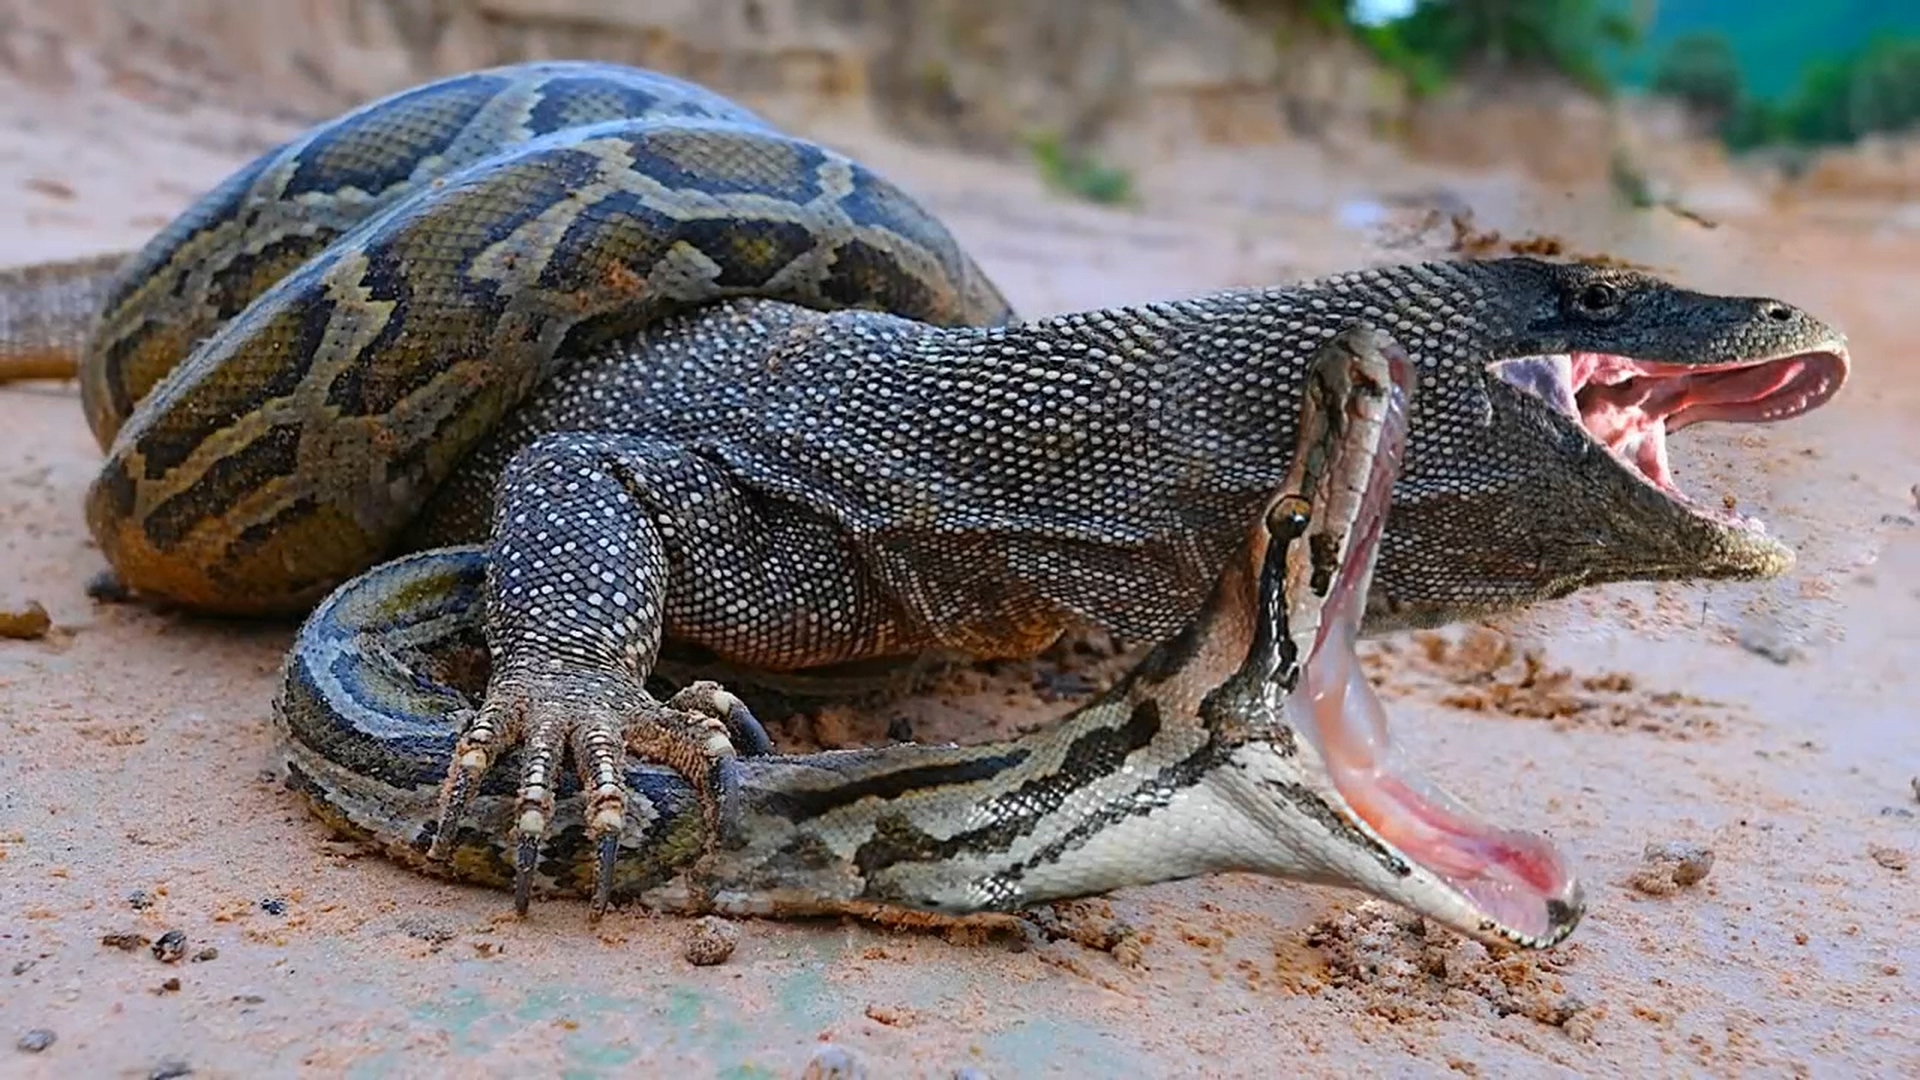 动物生存战:科莫多巨蜥大战巨蛇,鳄鱼也来激战,战败沦为盘中餐